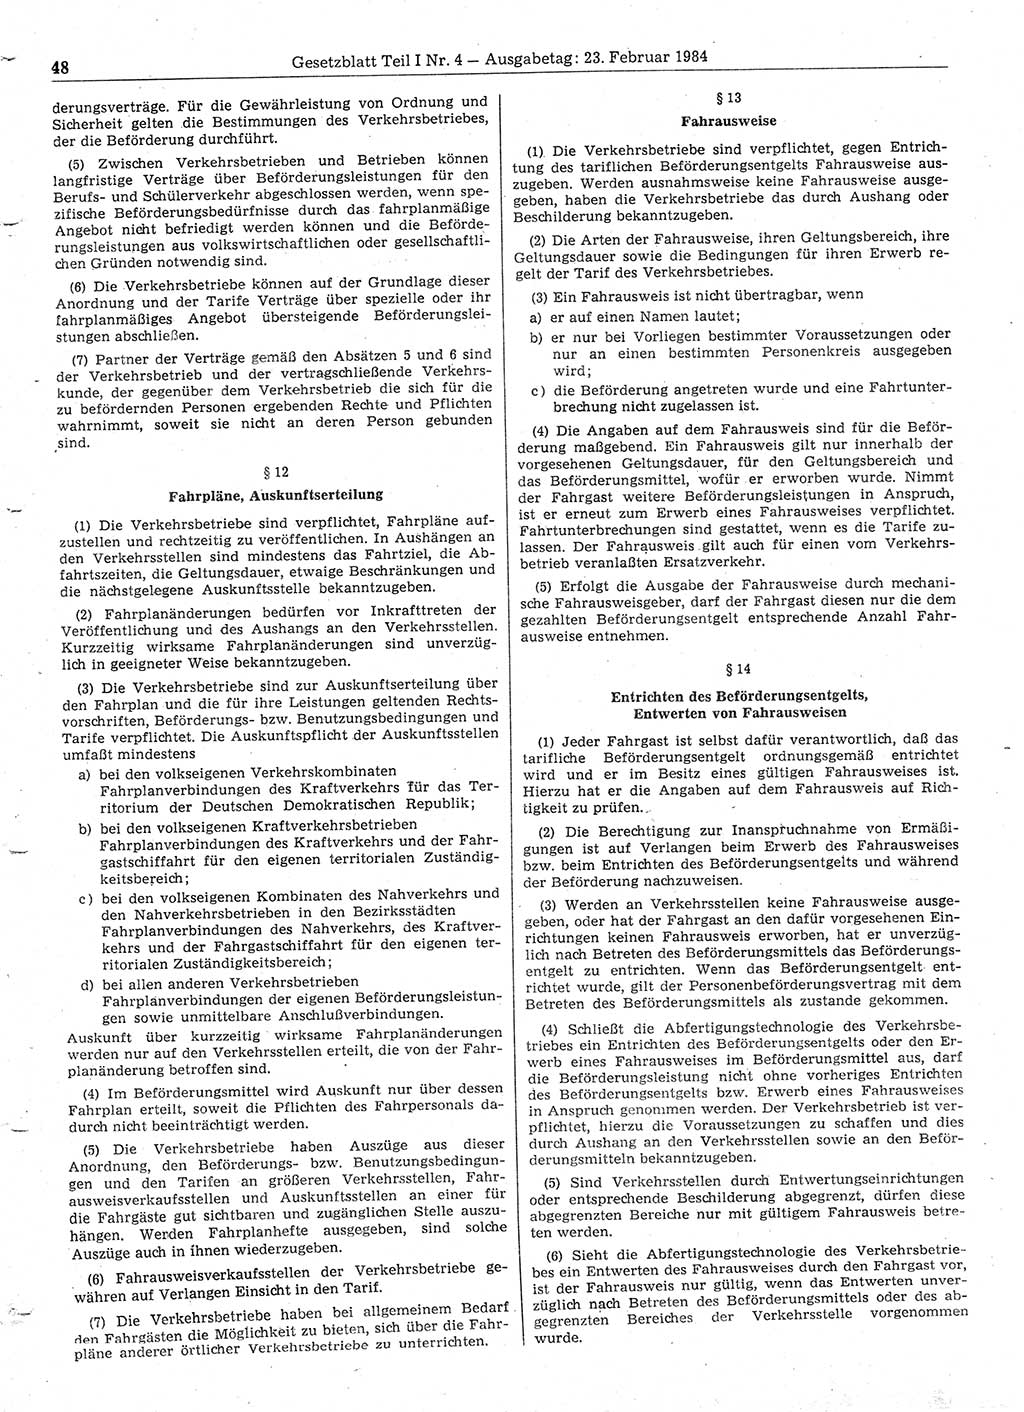 Gesetzblatt (GBl.) der Deutschen Demokratischen Republik (DDR) Teil Ⅰ 1984, Seite 48 (GBl. DDR Ⅰ 1984, S. 48)